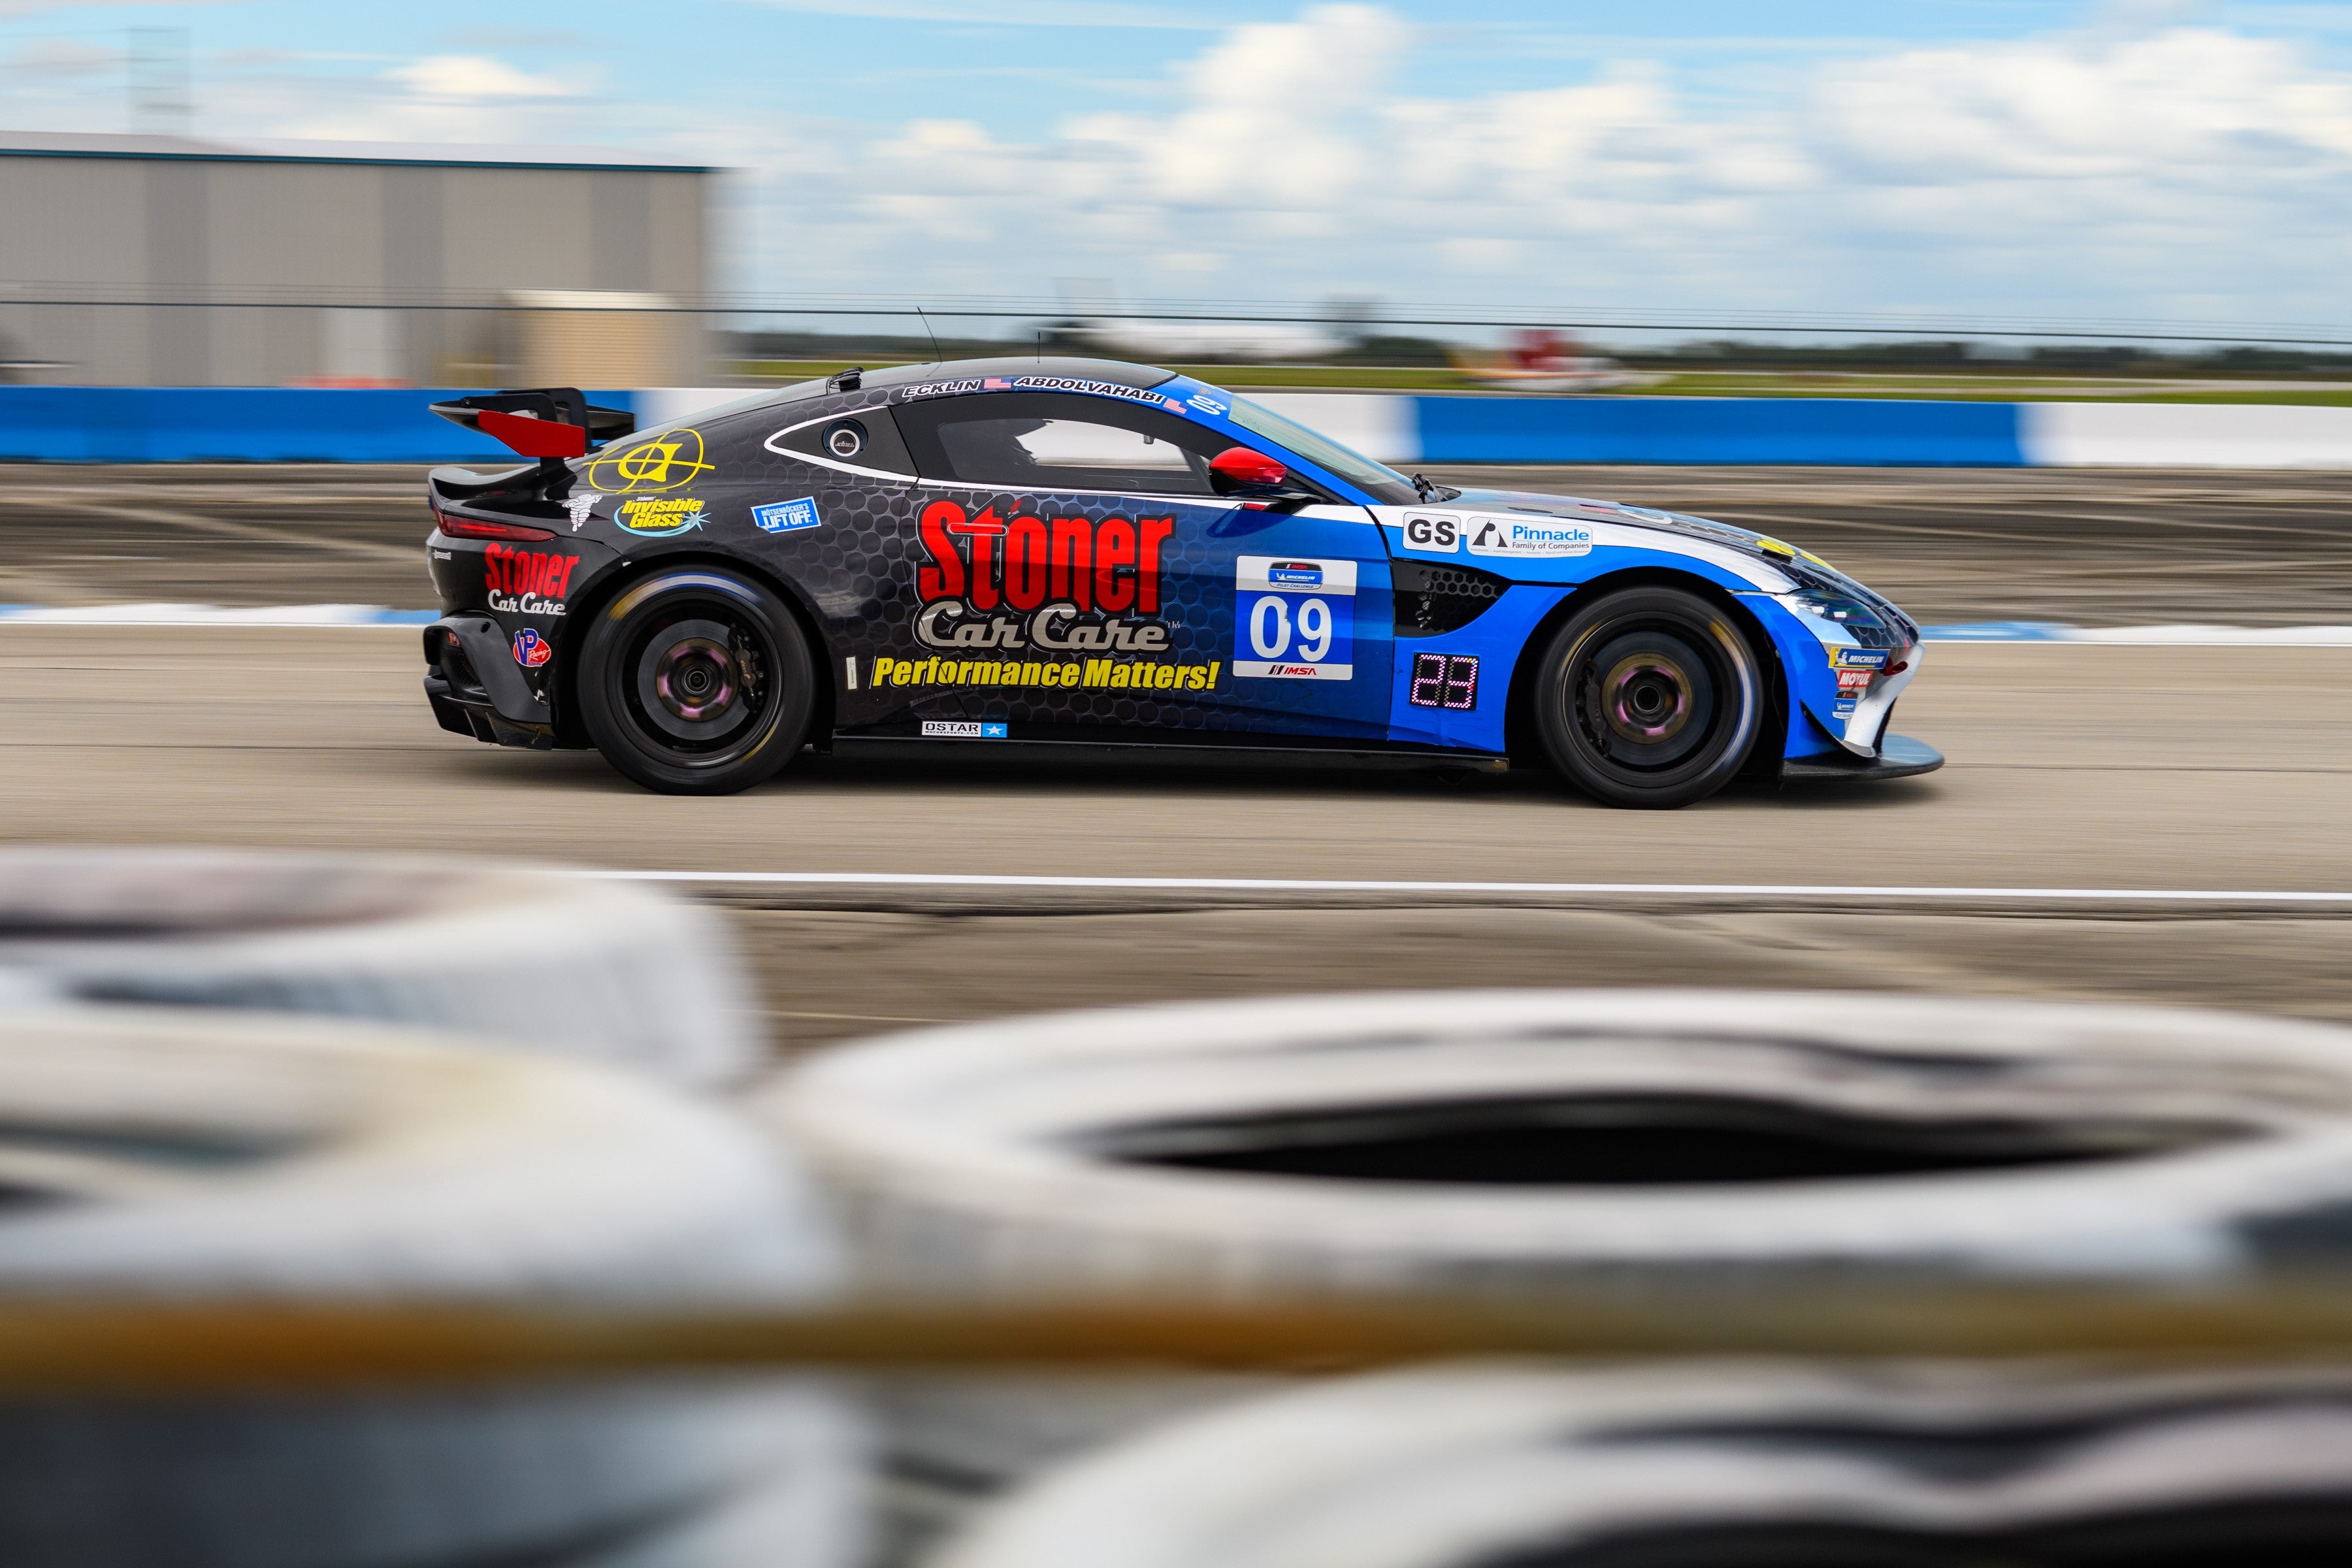 Stoner Car Car Racing Qualifies for IMSA Season Finale